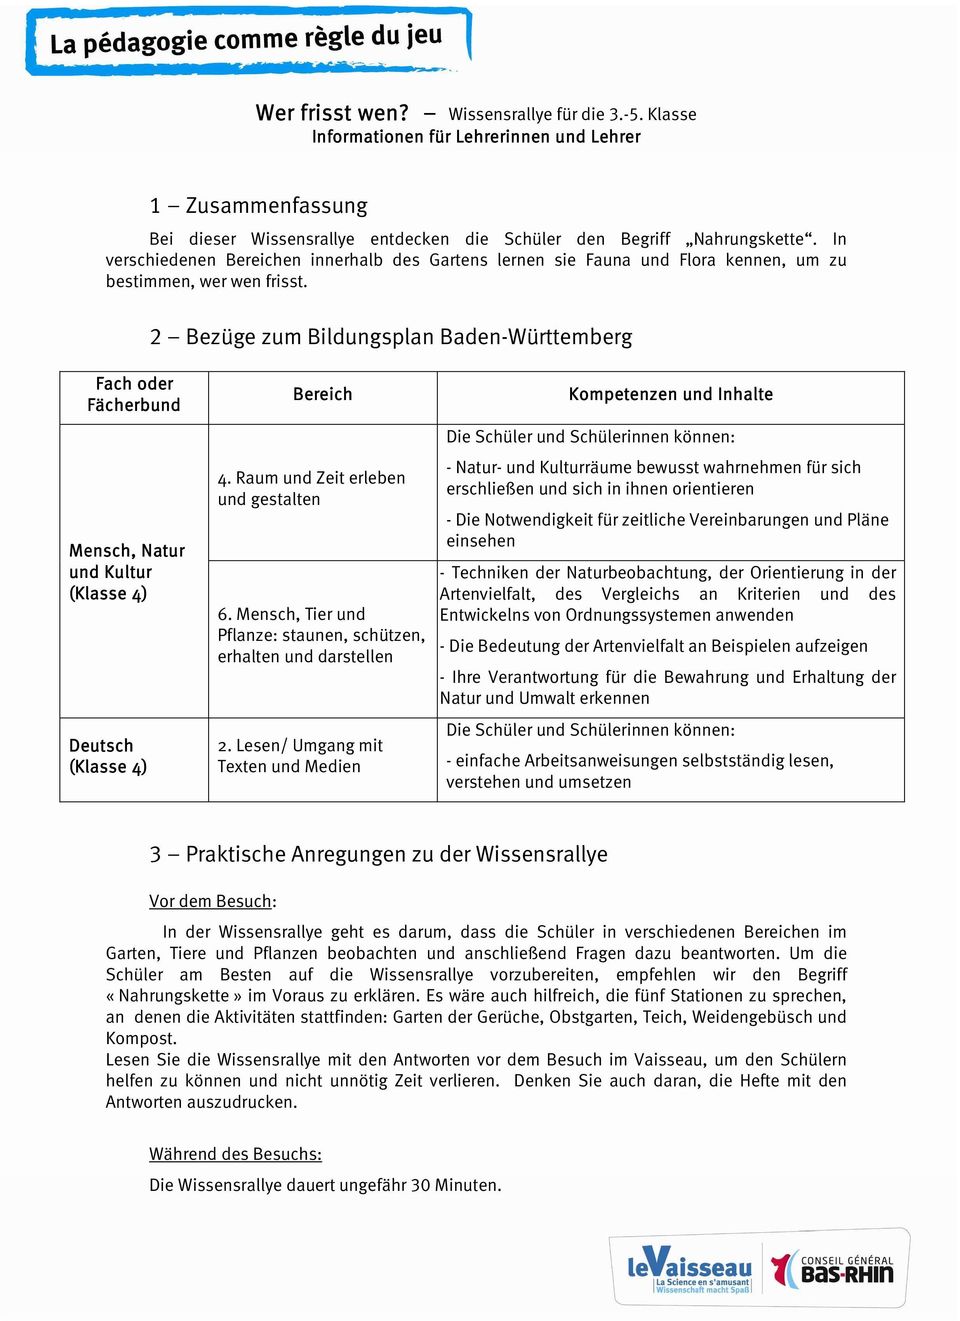 2 Bezüge zum Bildungsplan Baden-Württemberg Fach oder Fächerbund Mensch, Natur und Kultur (Klasse 4) Deutsch (Klasse 4) Bereich 4. Raum und Zeit erleben und gestalten 6.